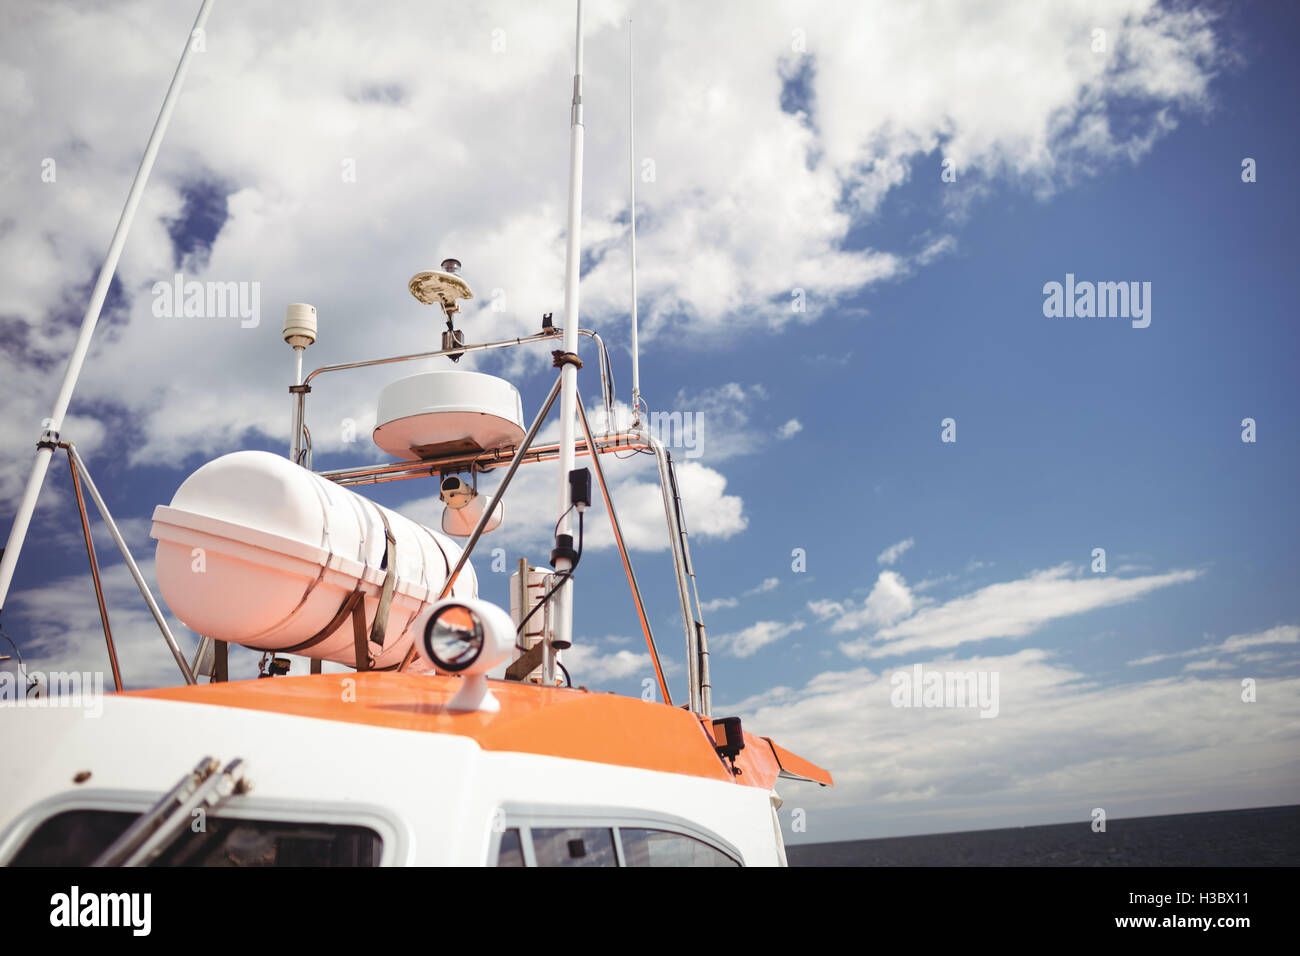 Antena en el barco de pesca Foto de stock